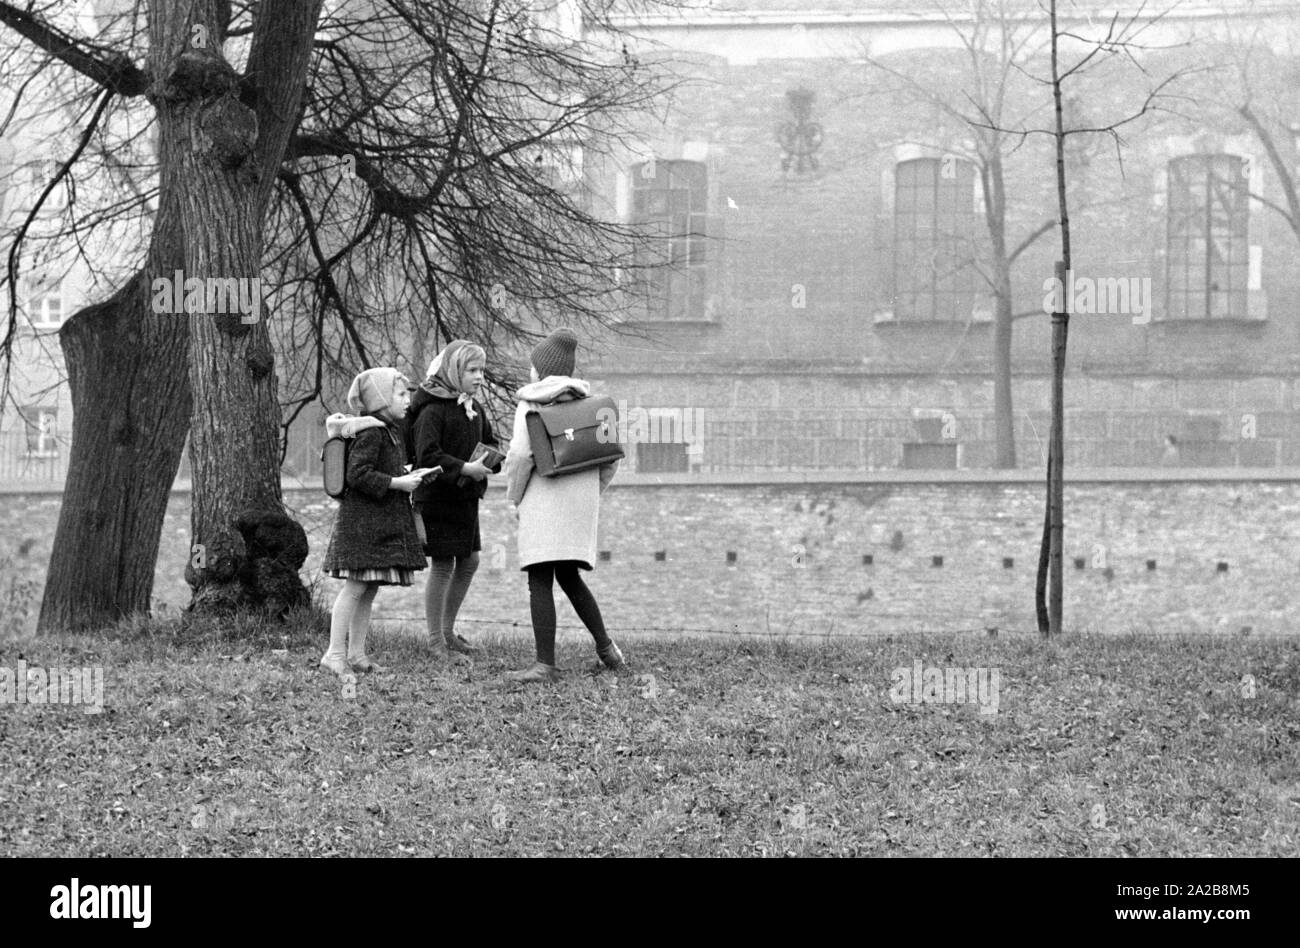 Les filles sont en conversation sur le chemin de l'école dans un parc. La photo a été prise dans le cadre d'une expérience d'enlèvement d'enfant de la Kriminalpolizei Augsbourg. Banque D'Images